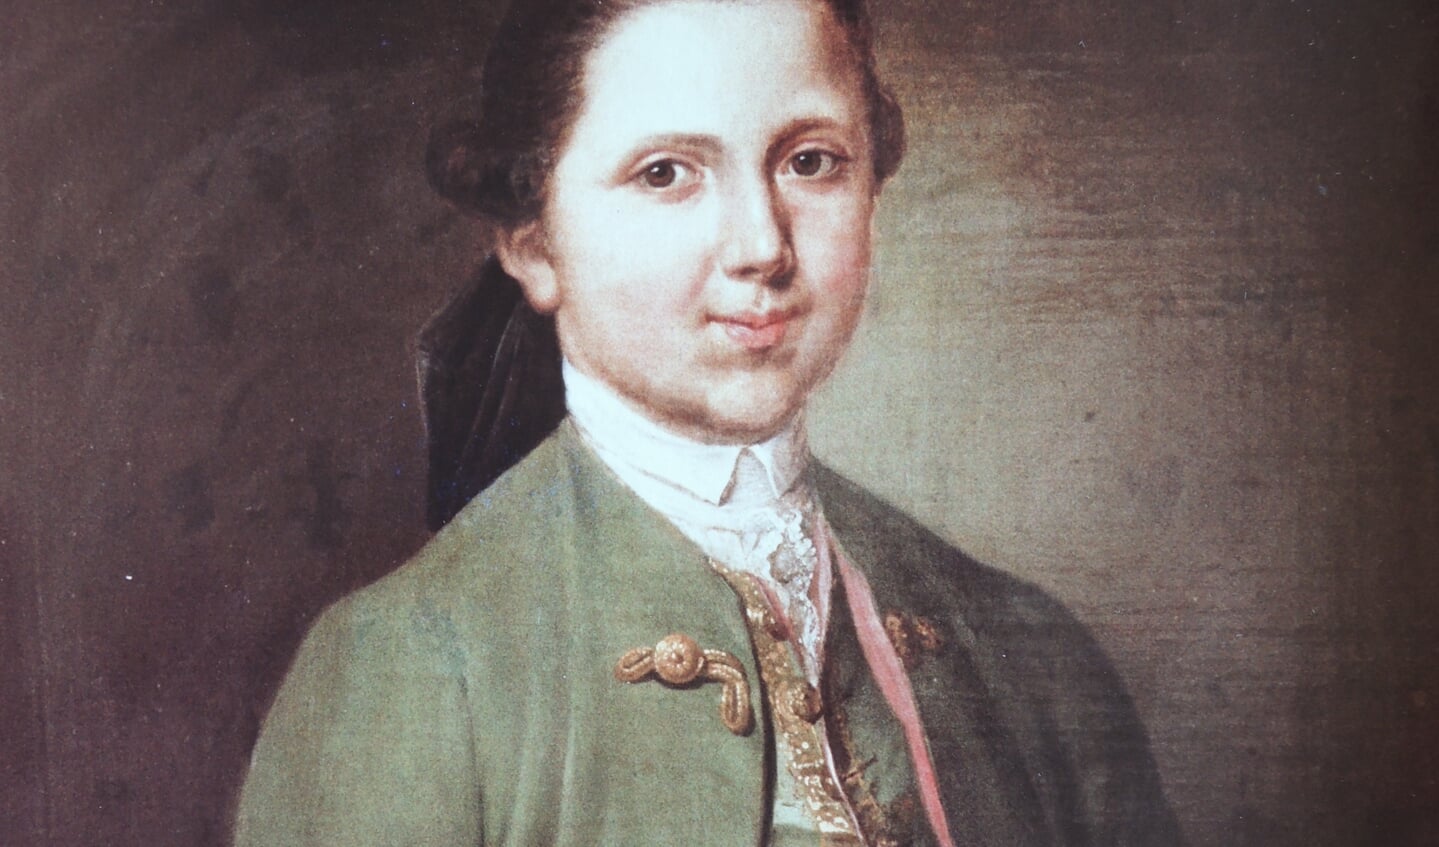 Cootje De la Sablonière op ongeveer 14 jarige leeftijd.